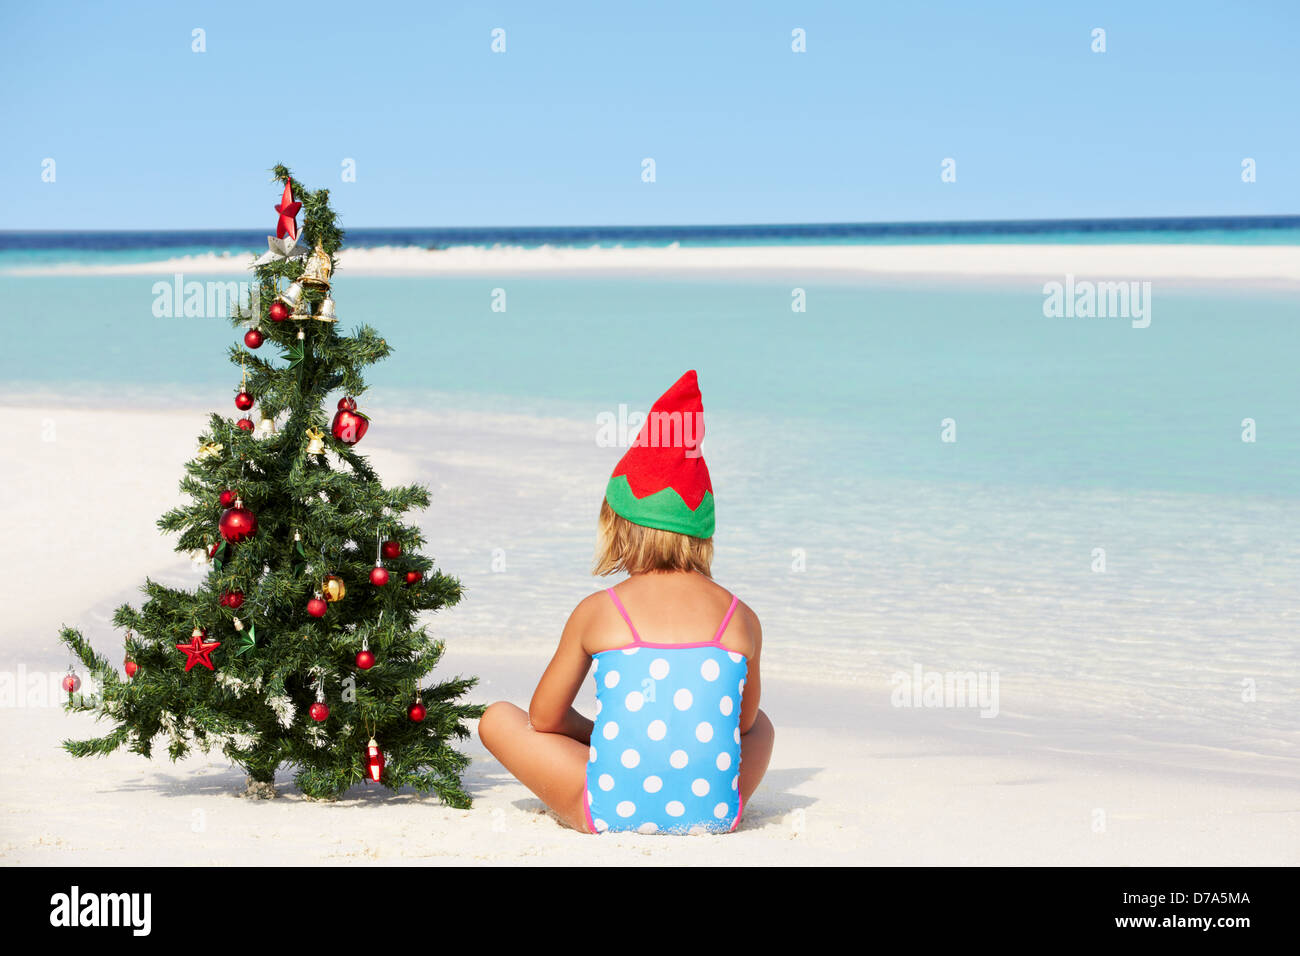 Albero Di Natale Estivo.Ragazza Seduta Sulla Spiaggia Con Albero Di Natale E Hat Foto Stock Alamy